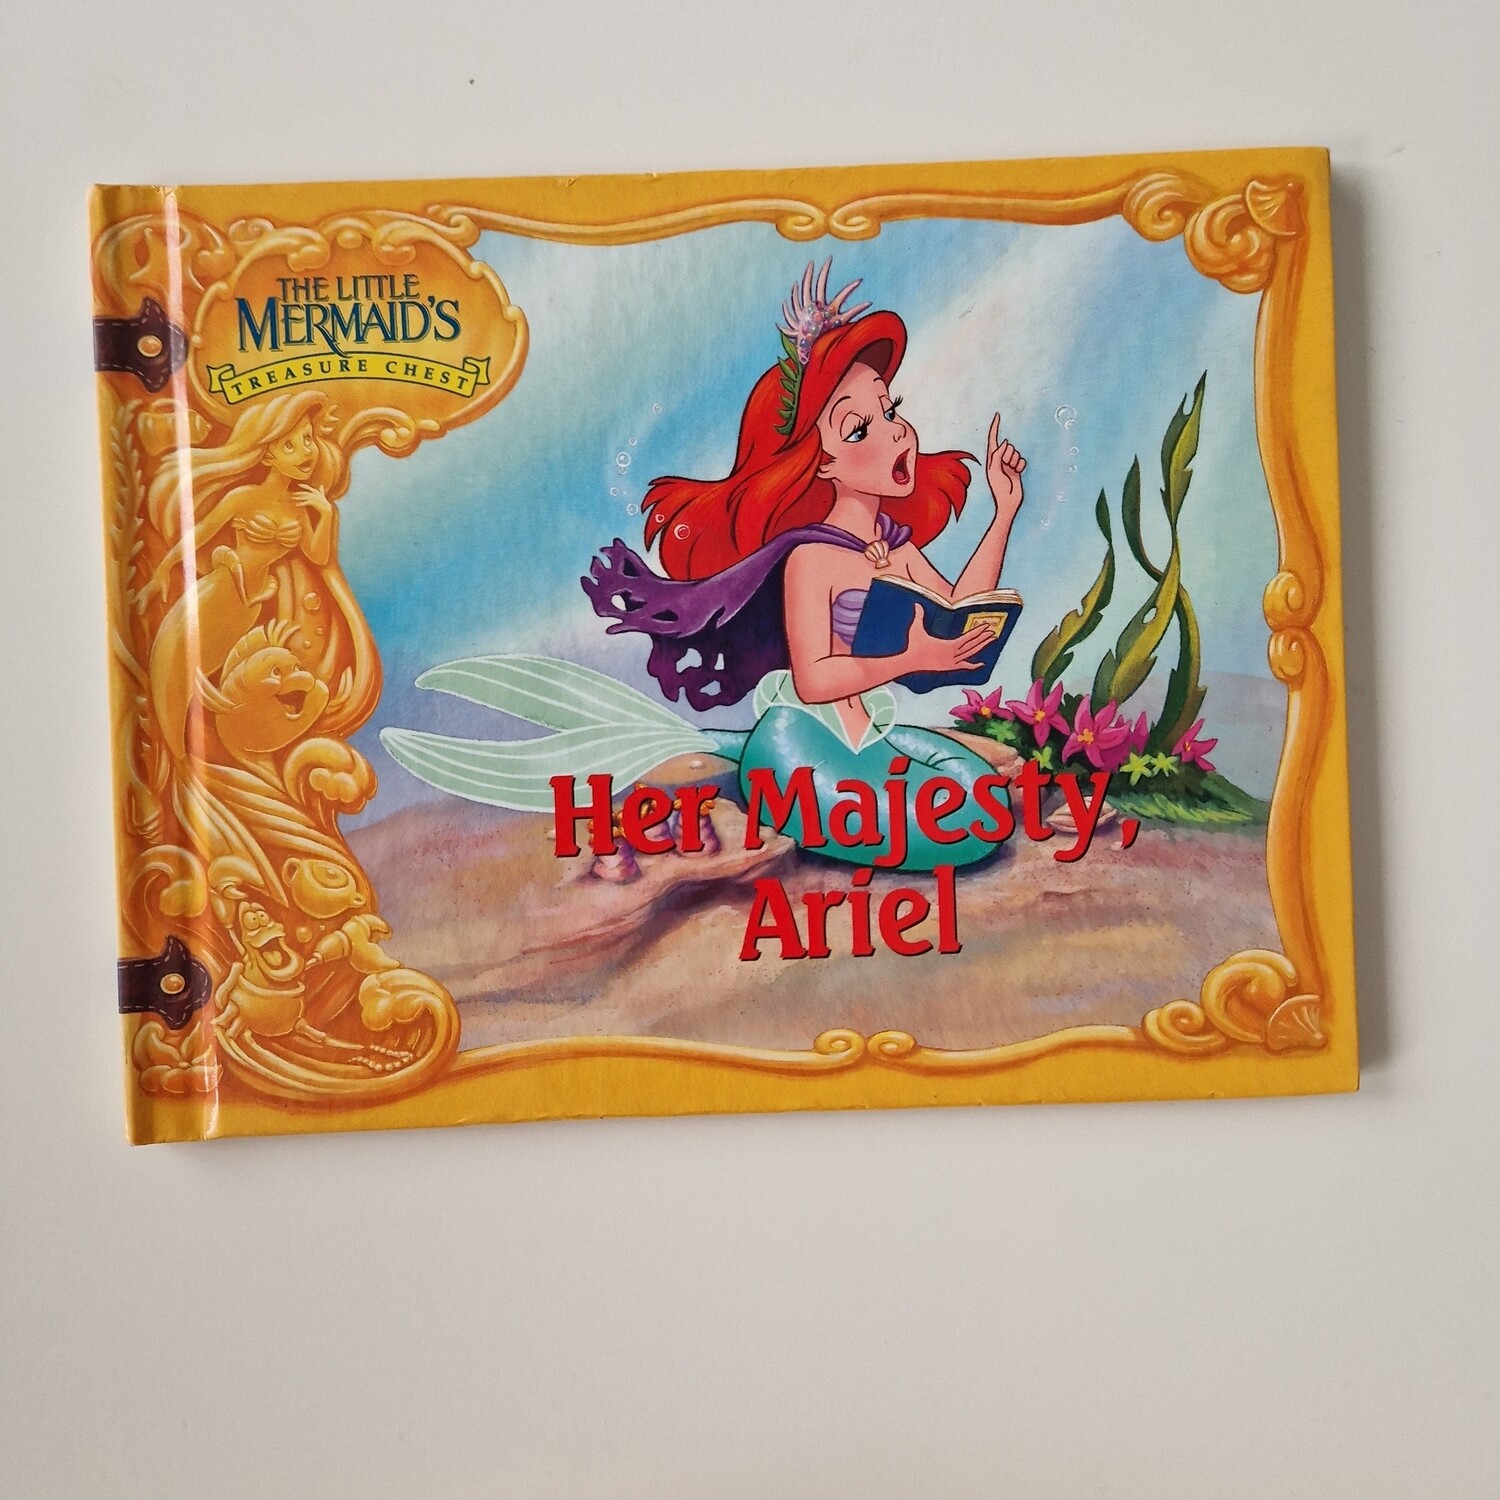 The Little Mermaid - Her Majesty, Ariel